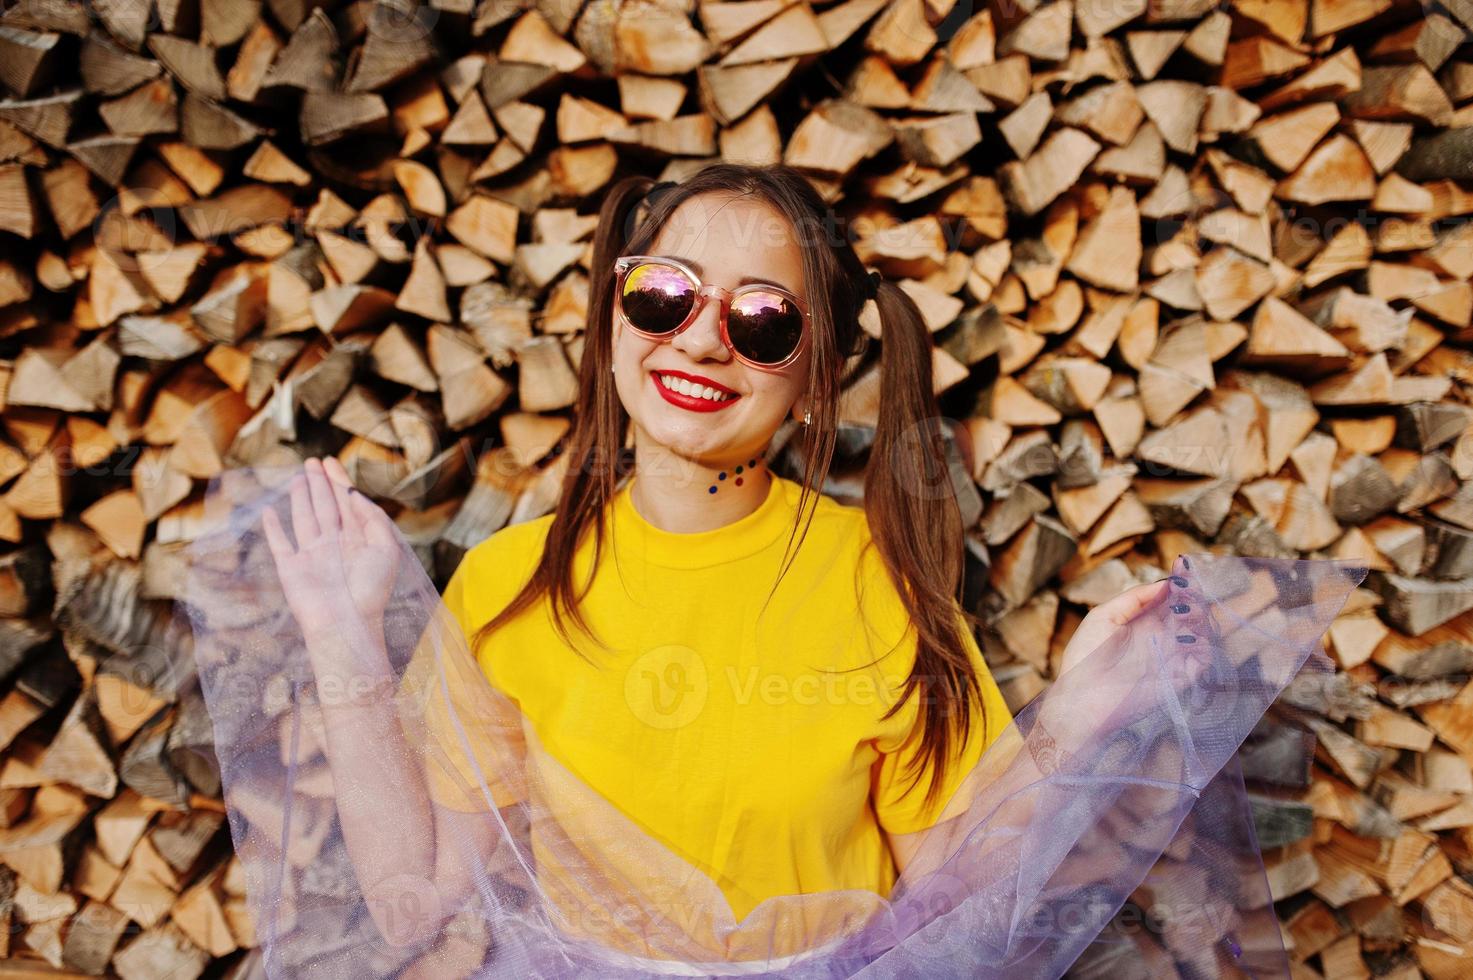 jong grappig meisje met lichte make-up, staarthaarslijtage op geel shirt en zonnebril tegen houten achtergrond. foto